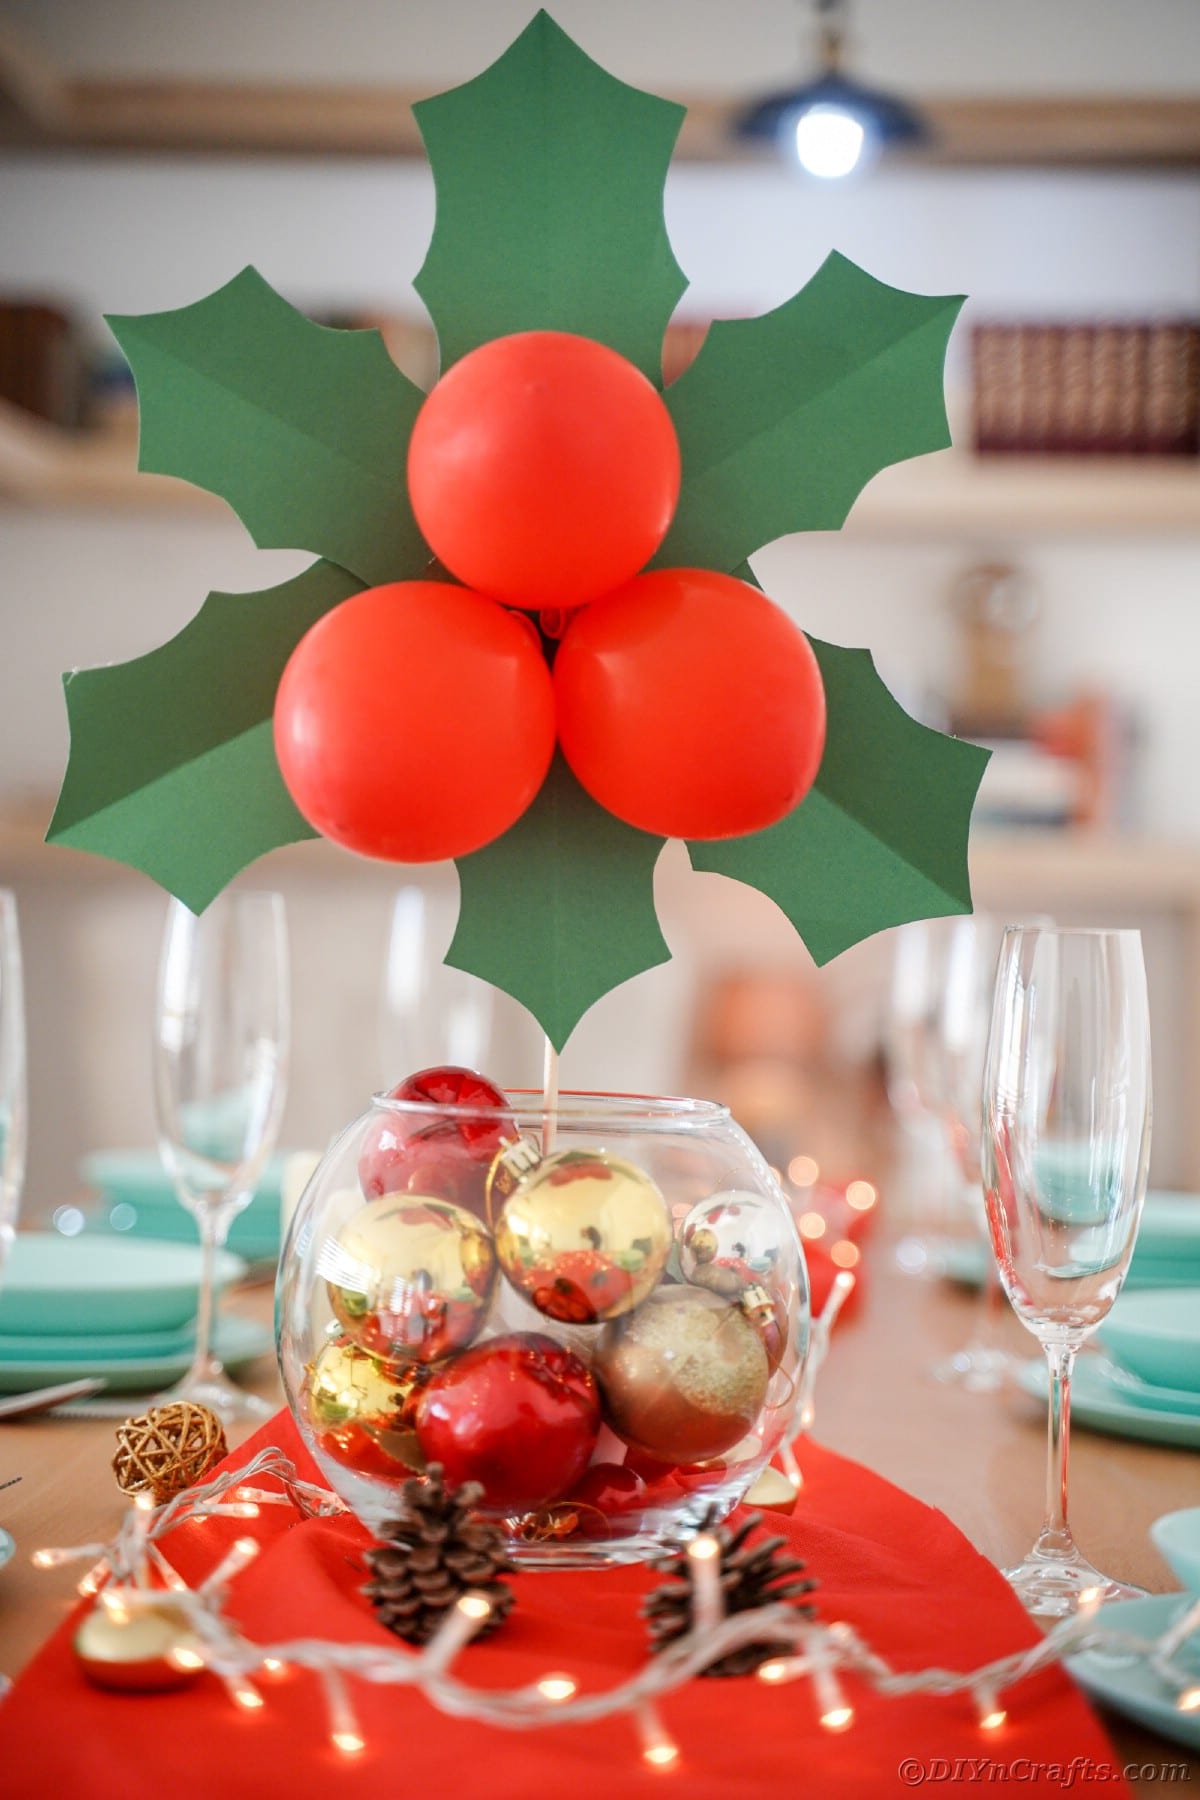 steklena skleda z zlatimi in rdečimi okraski na mizi, ki drži velikanske liste božikovine